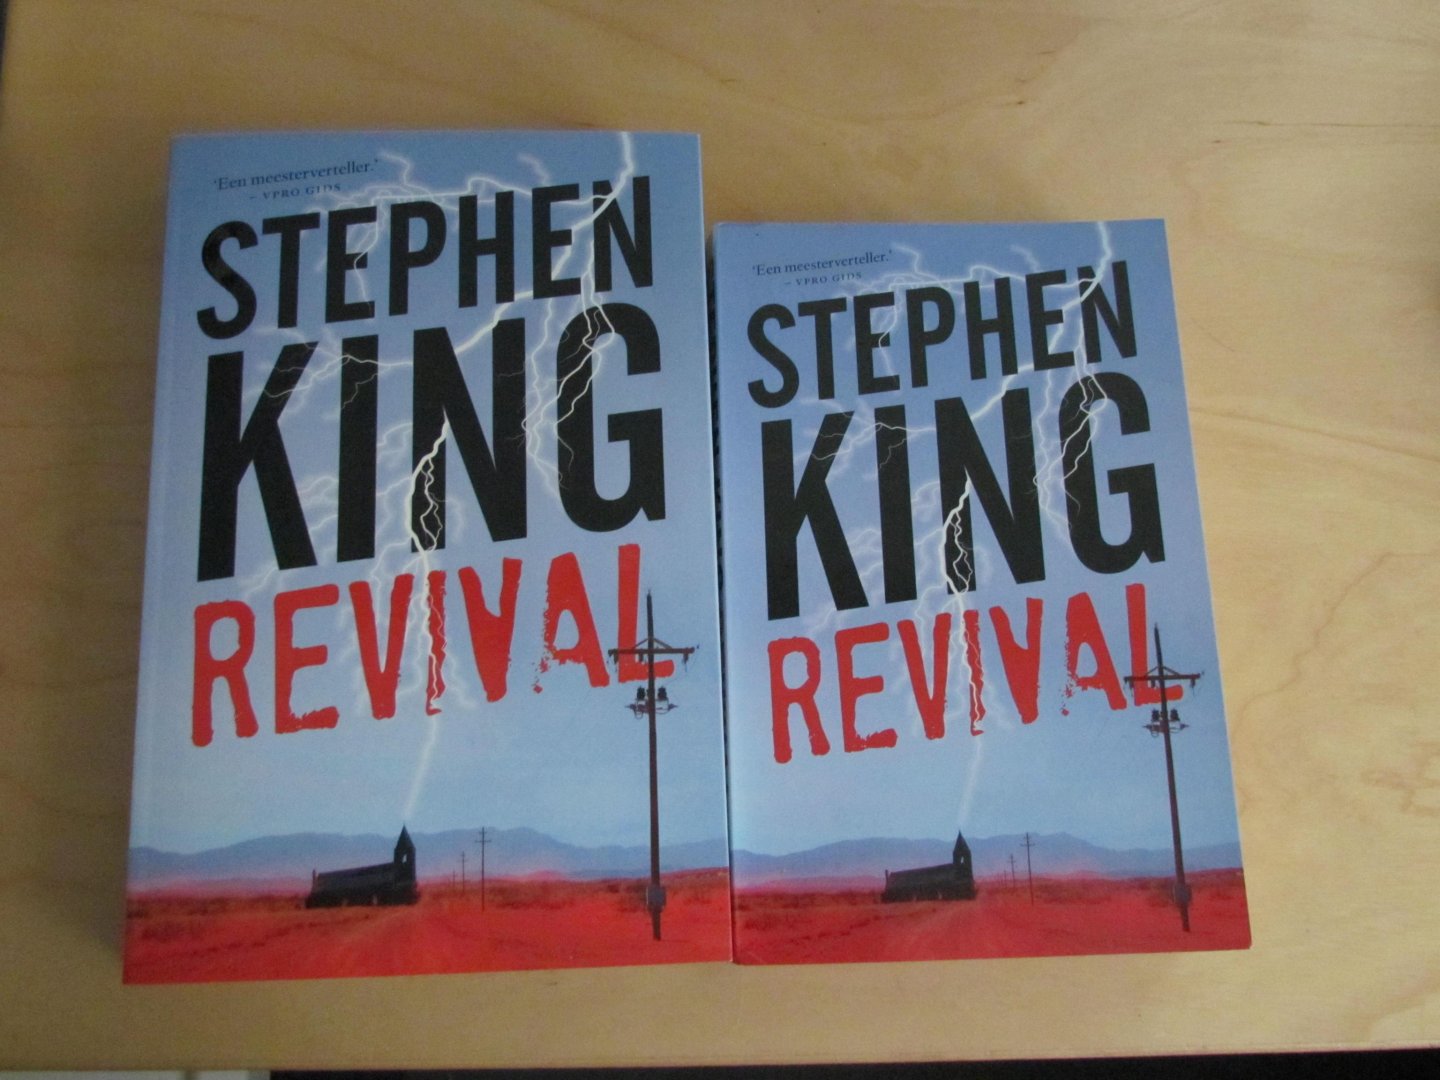 King, Stephen - Revival | Stephen King | (NL-talig) 9789021019208 Reefman editie -  Dit is de kleine speciale editie die tijdelijk alleen bij AH verkrijgbaar was